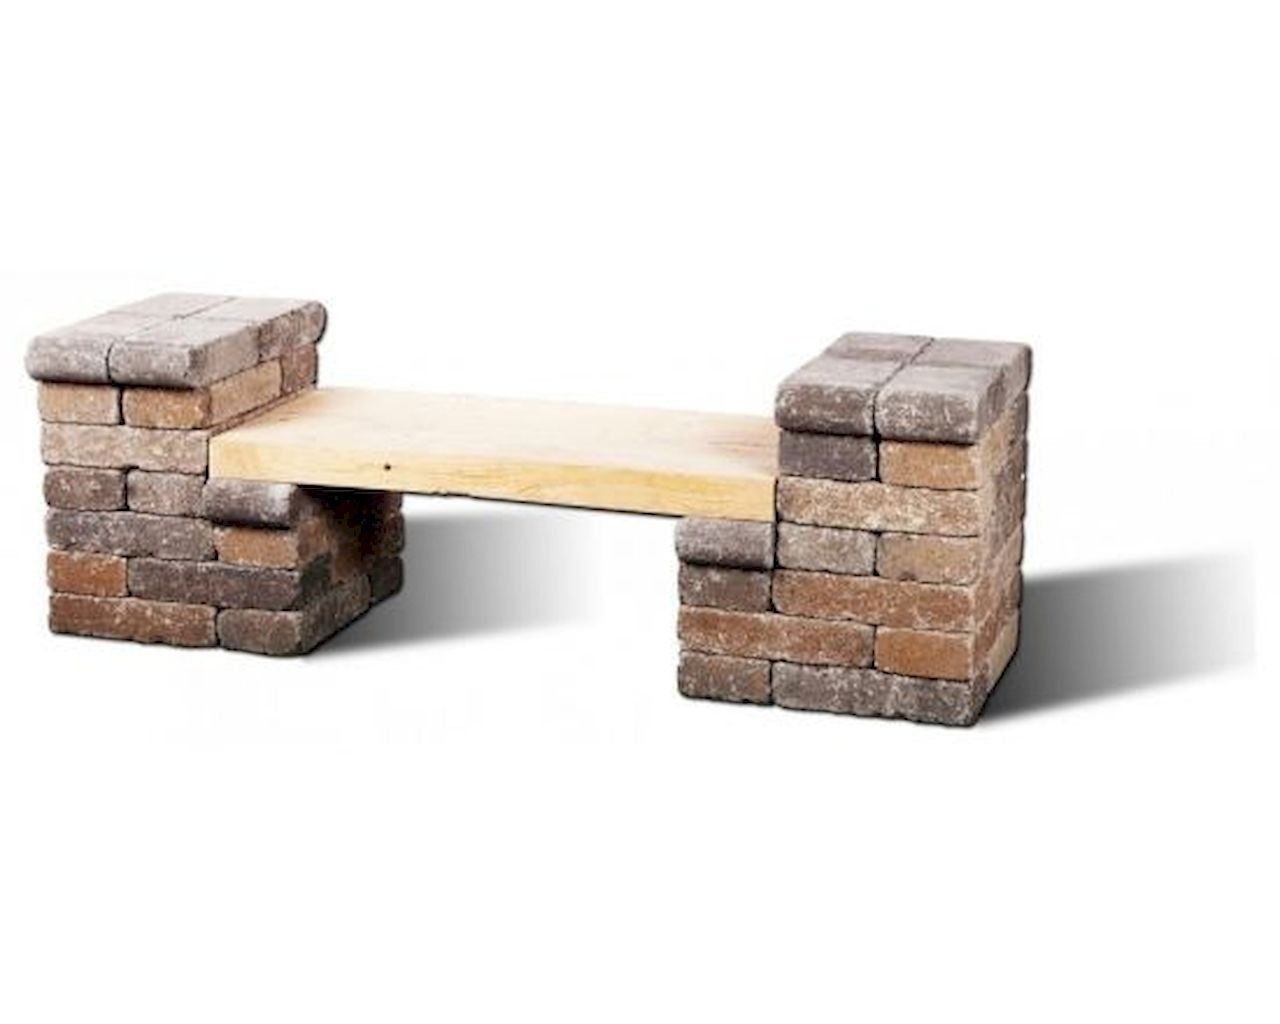 40 cheap diy outdoor bench design ideas for backyard 1